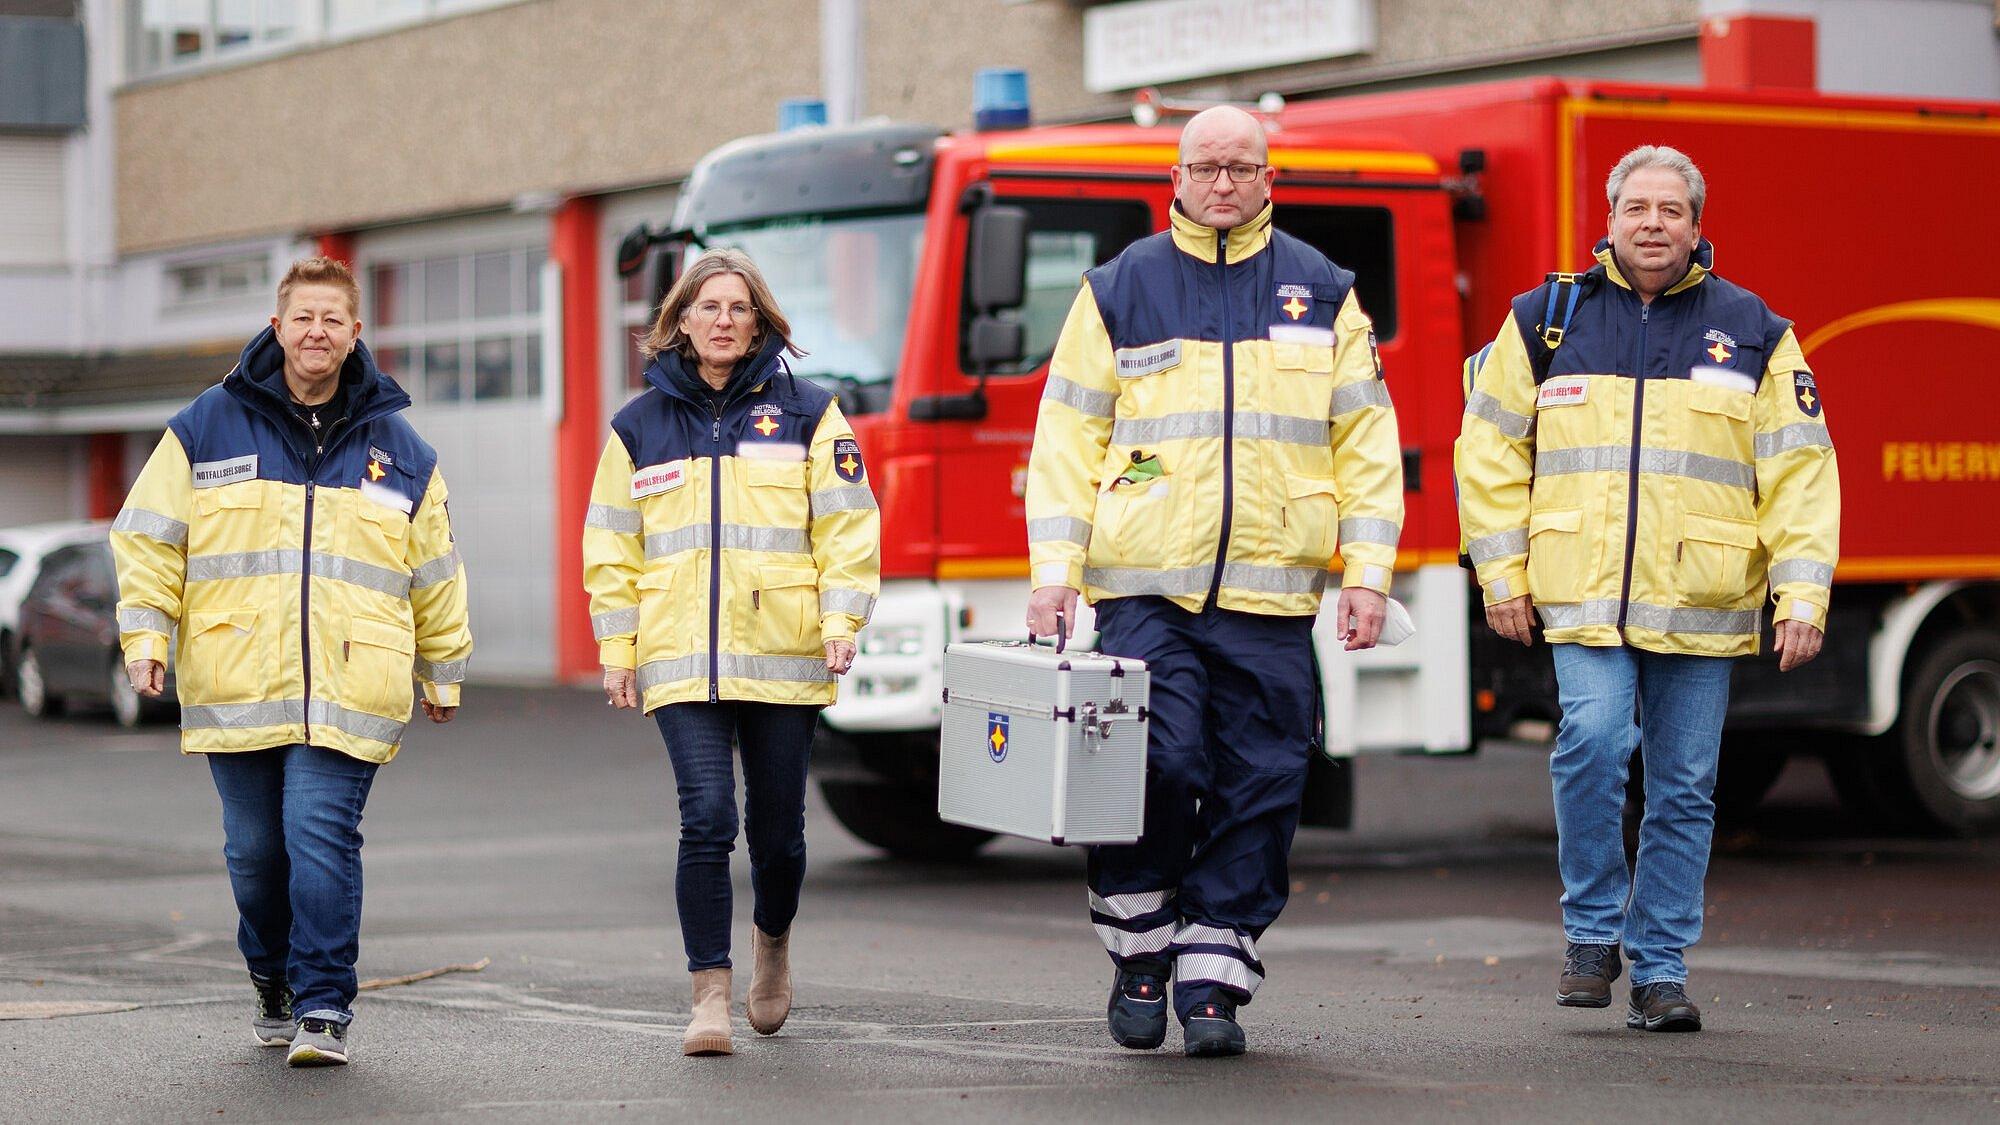 Vier Personen laufen auf den Fotografen zu. Sie tragen Uniformen der Notfallseelsorge. Im Hintergrund steht ein Feuerwehrfahrzeug vor der Brandwache.